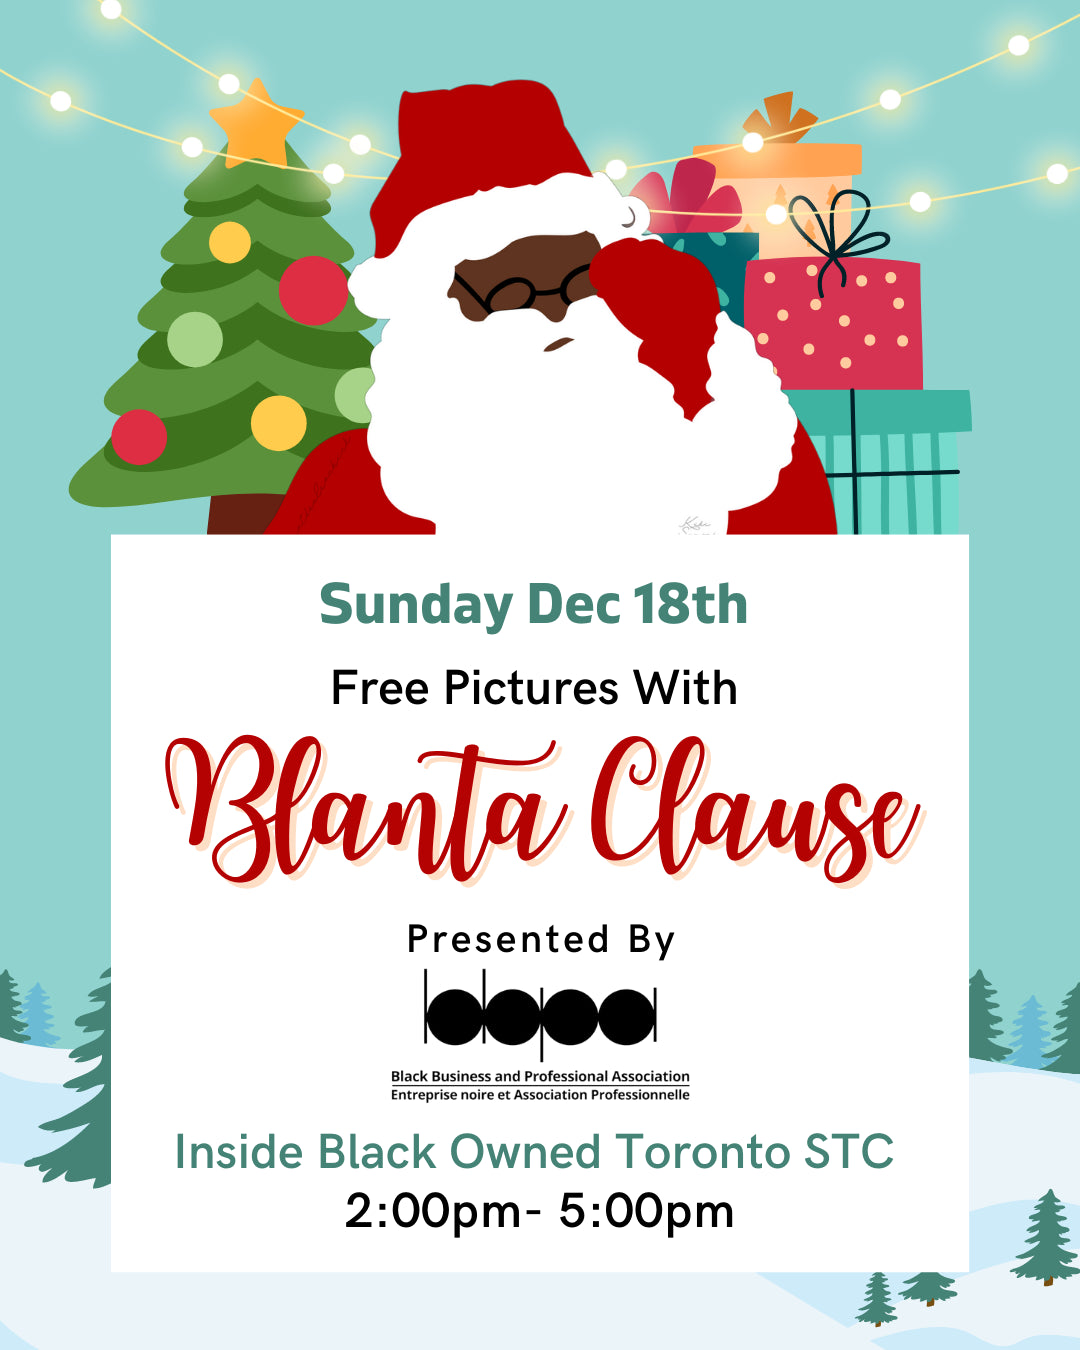 BBPA Presents "Blanta Clause" at Black Owned Toronto